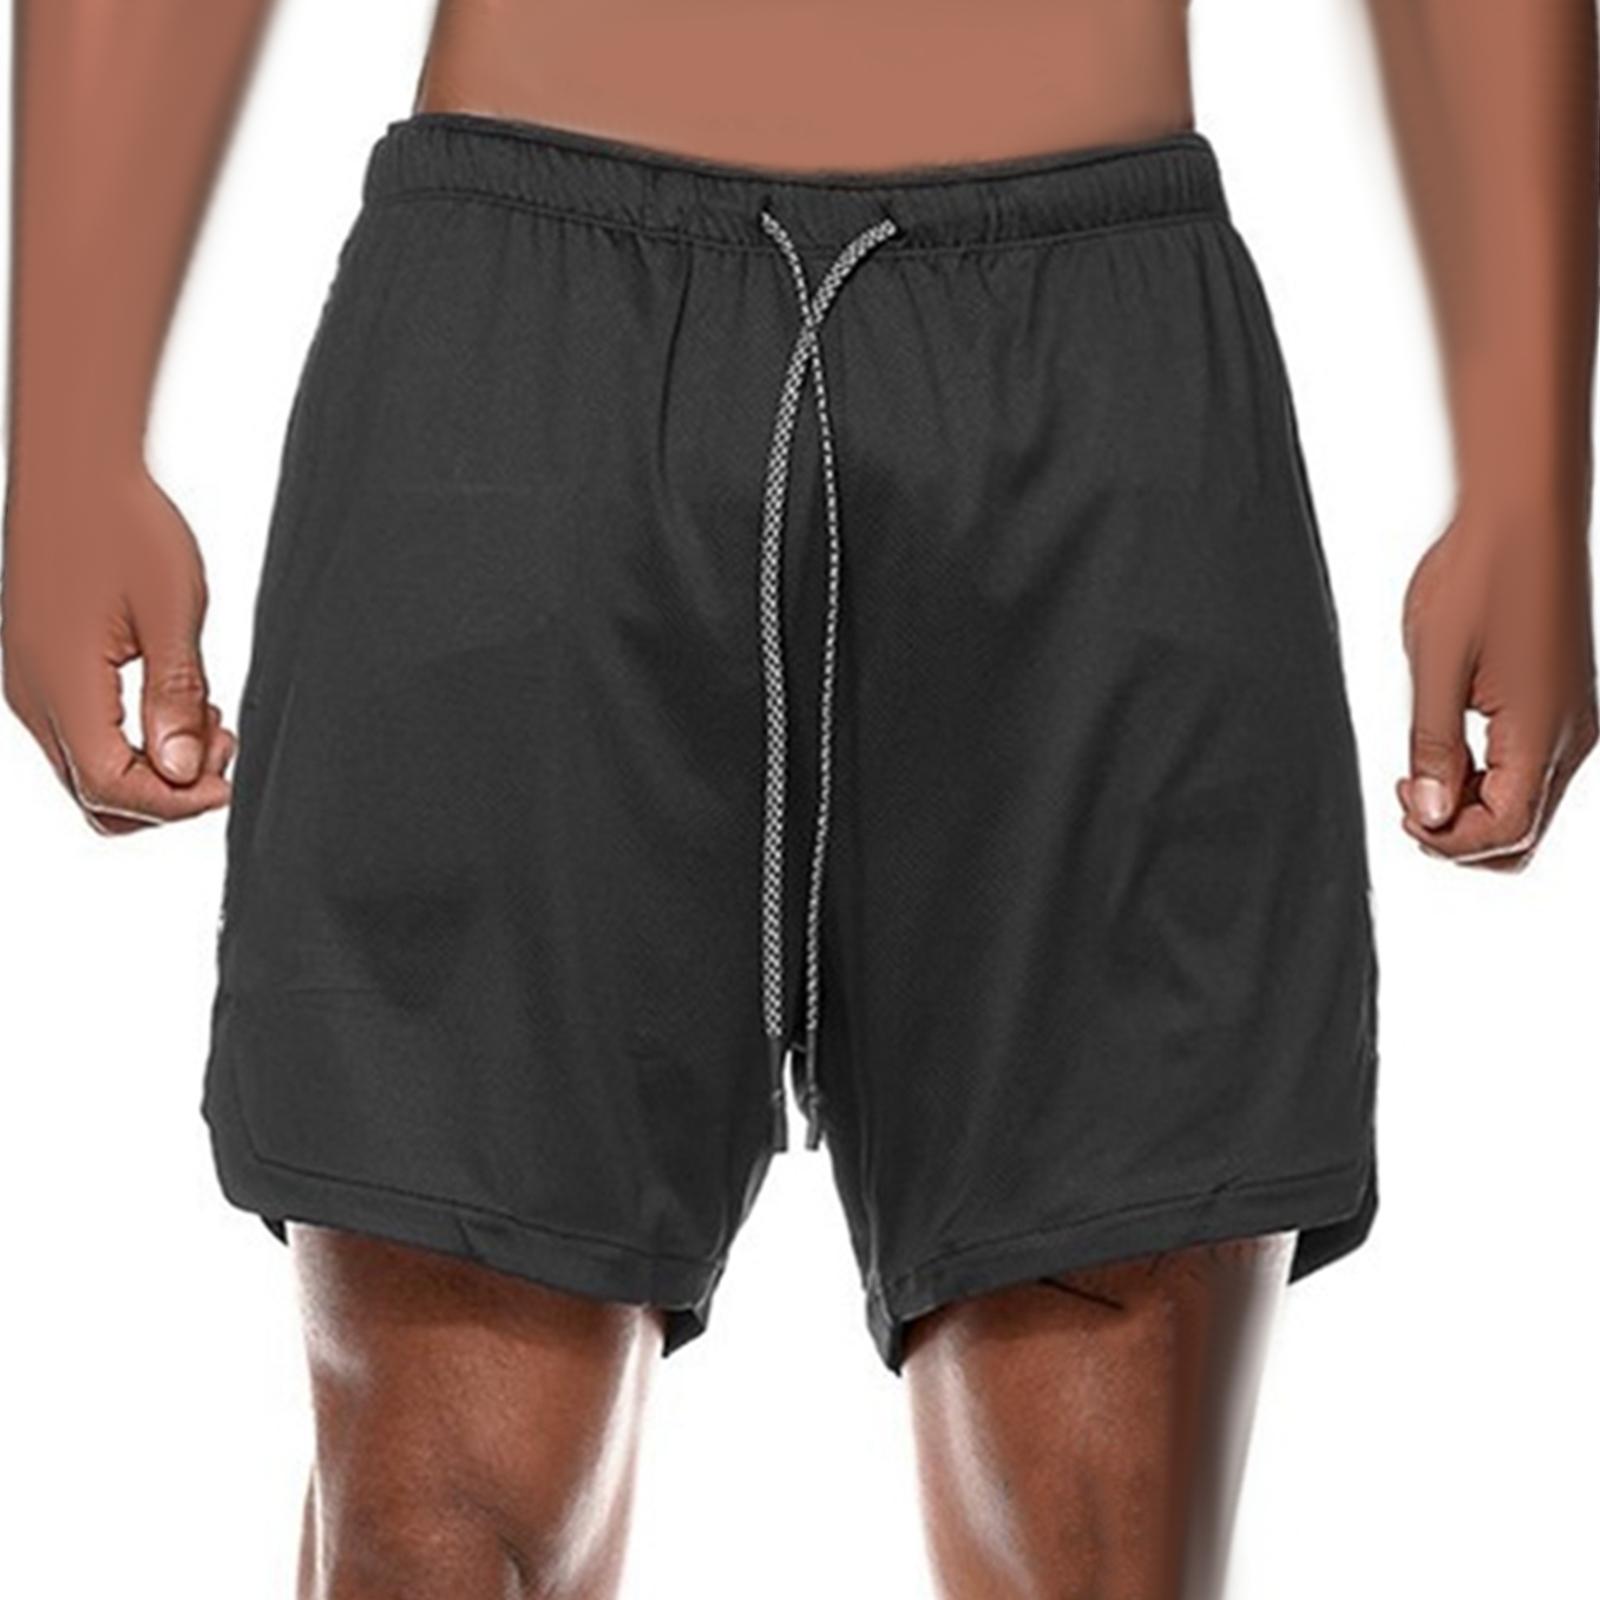 Men's 2 in 1 Running Shorts Summer Sports Shorts for Yoga Sports Training Black XXL